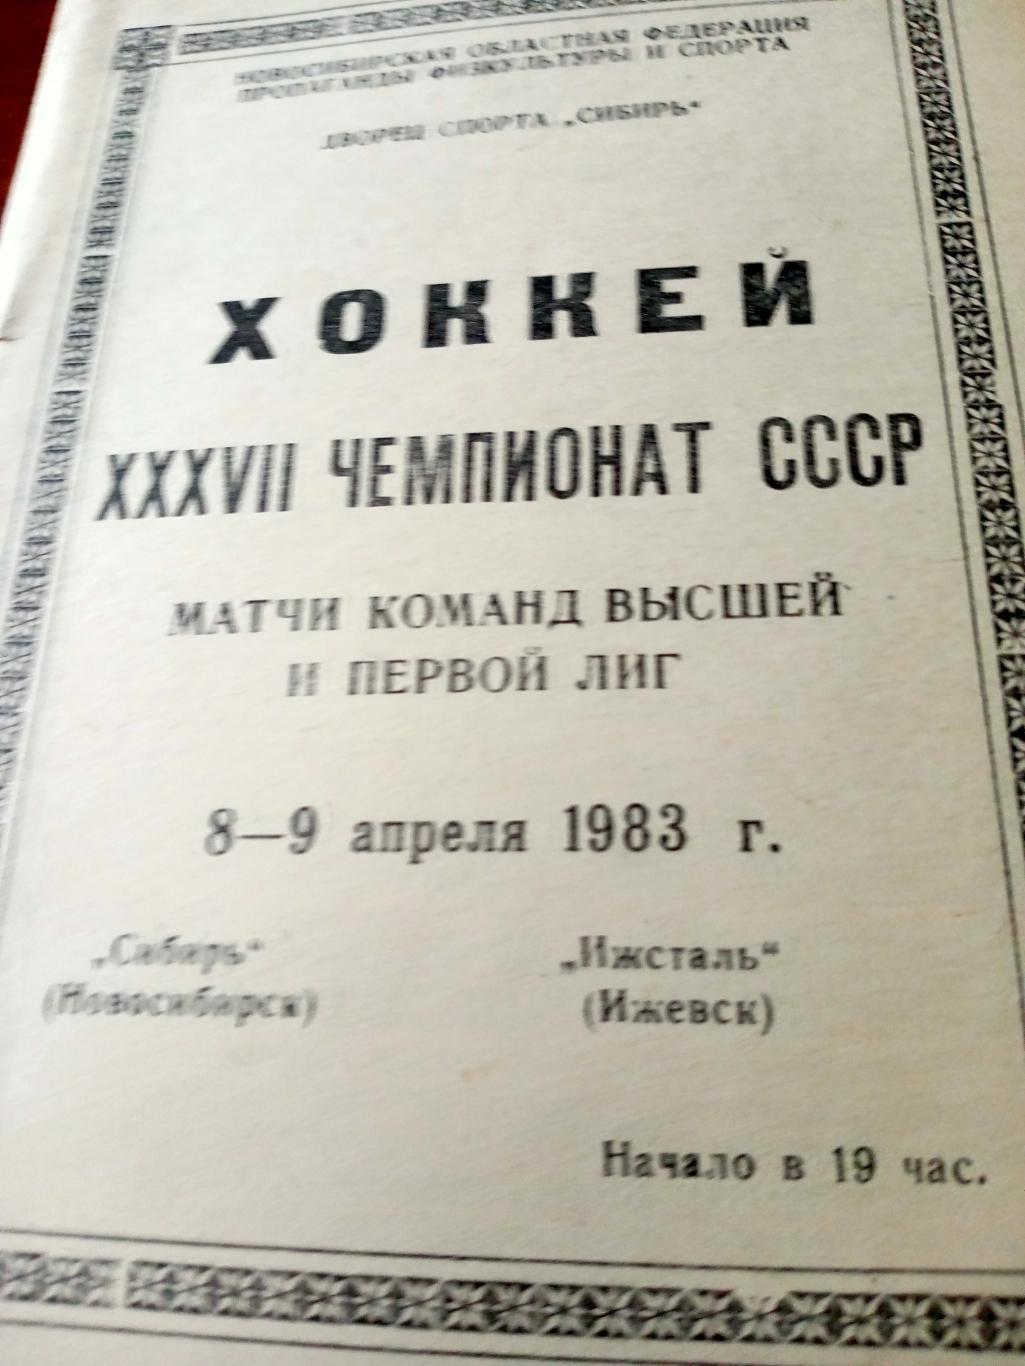 Сибирь Новосибирск - Ижсталь Ижевск. 8 и 9 апреля 1983 год